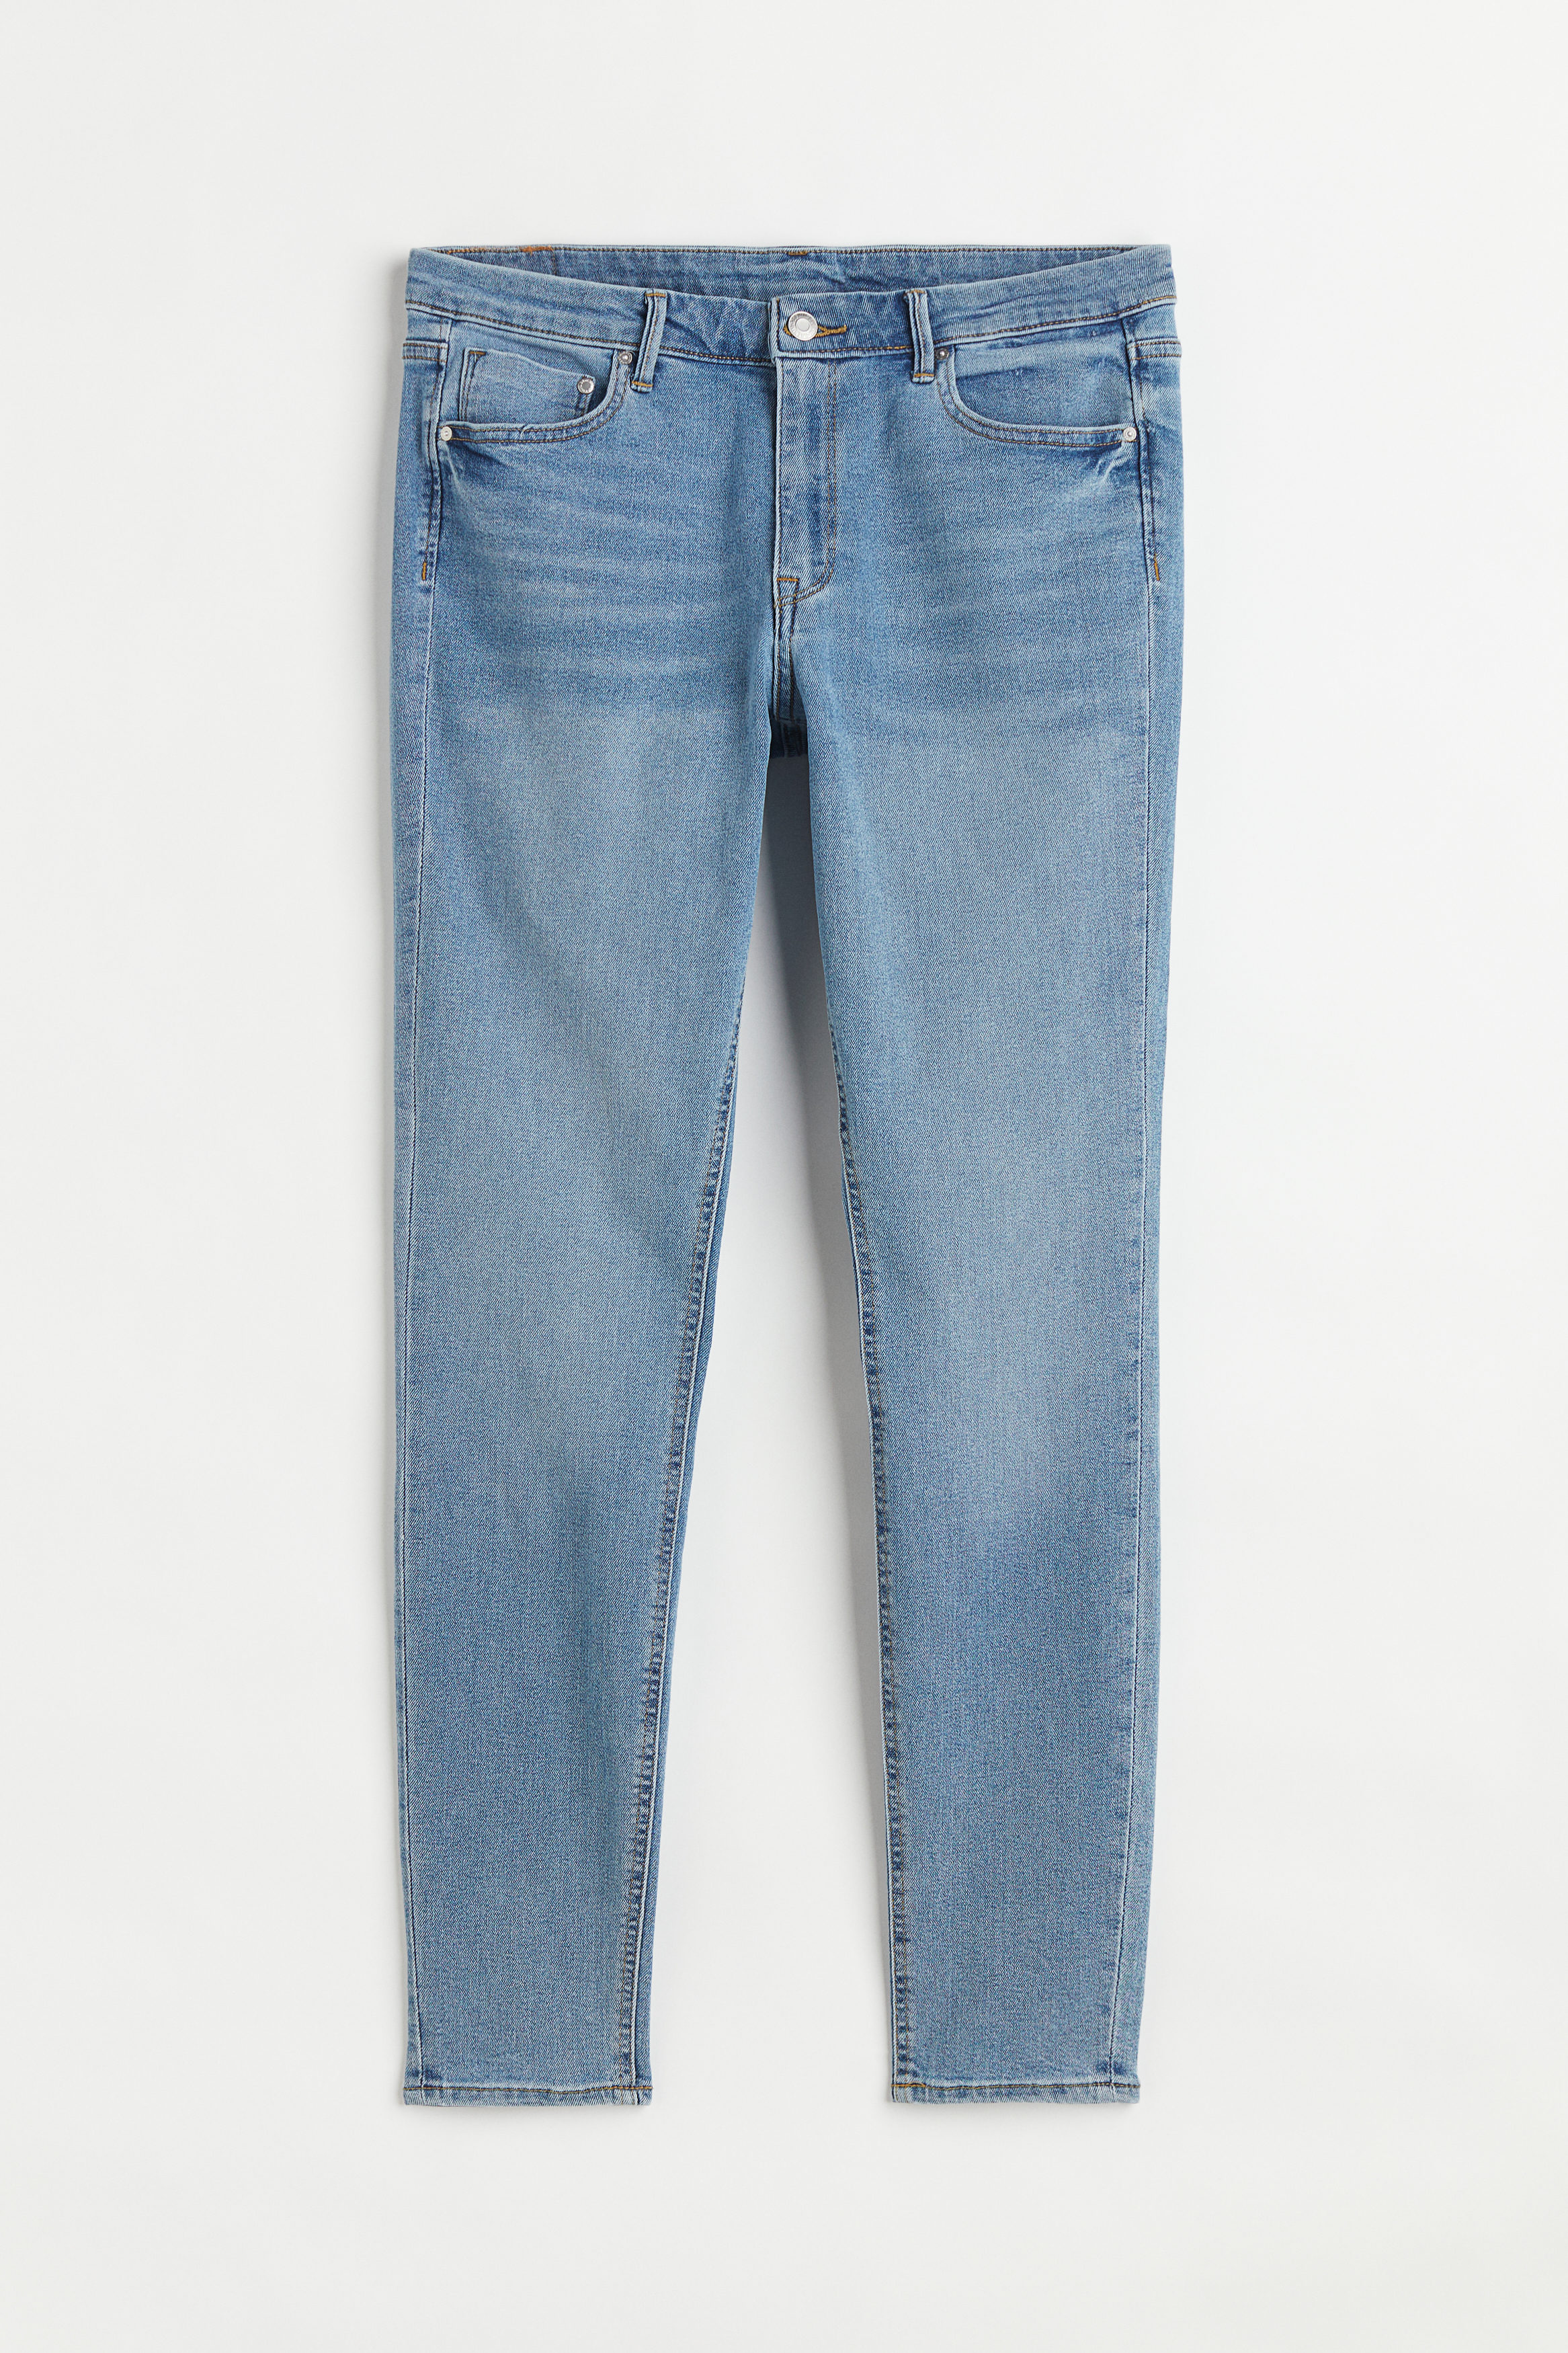 Billede af H&M Skinny Regular Jeans Denimblå, jeans. Farve: Denim blue 006 I størrelse 56